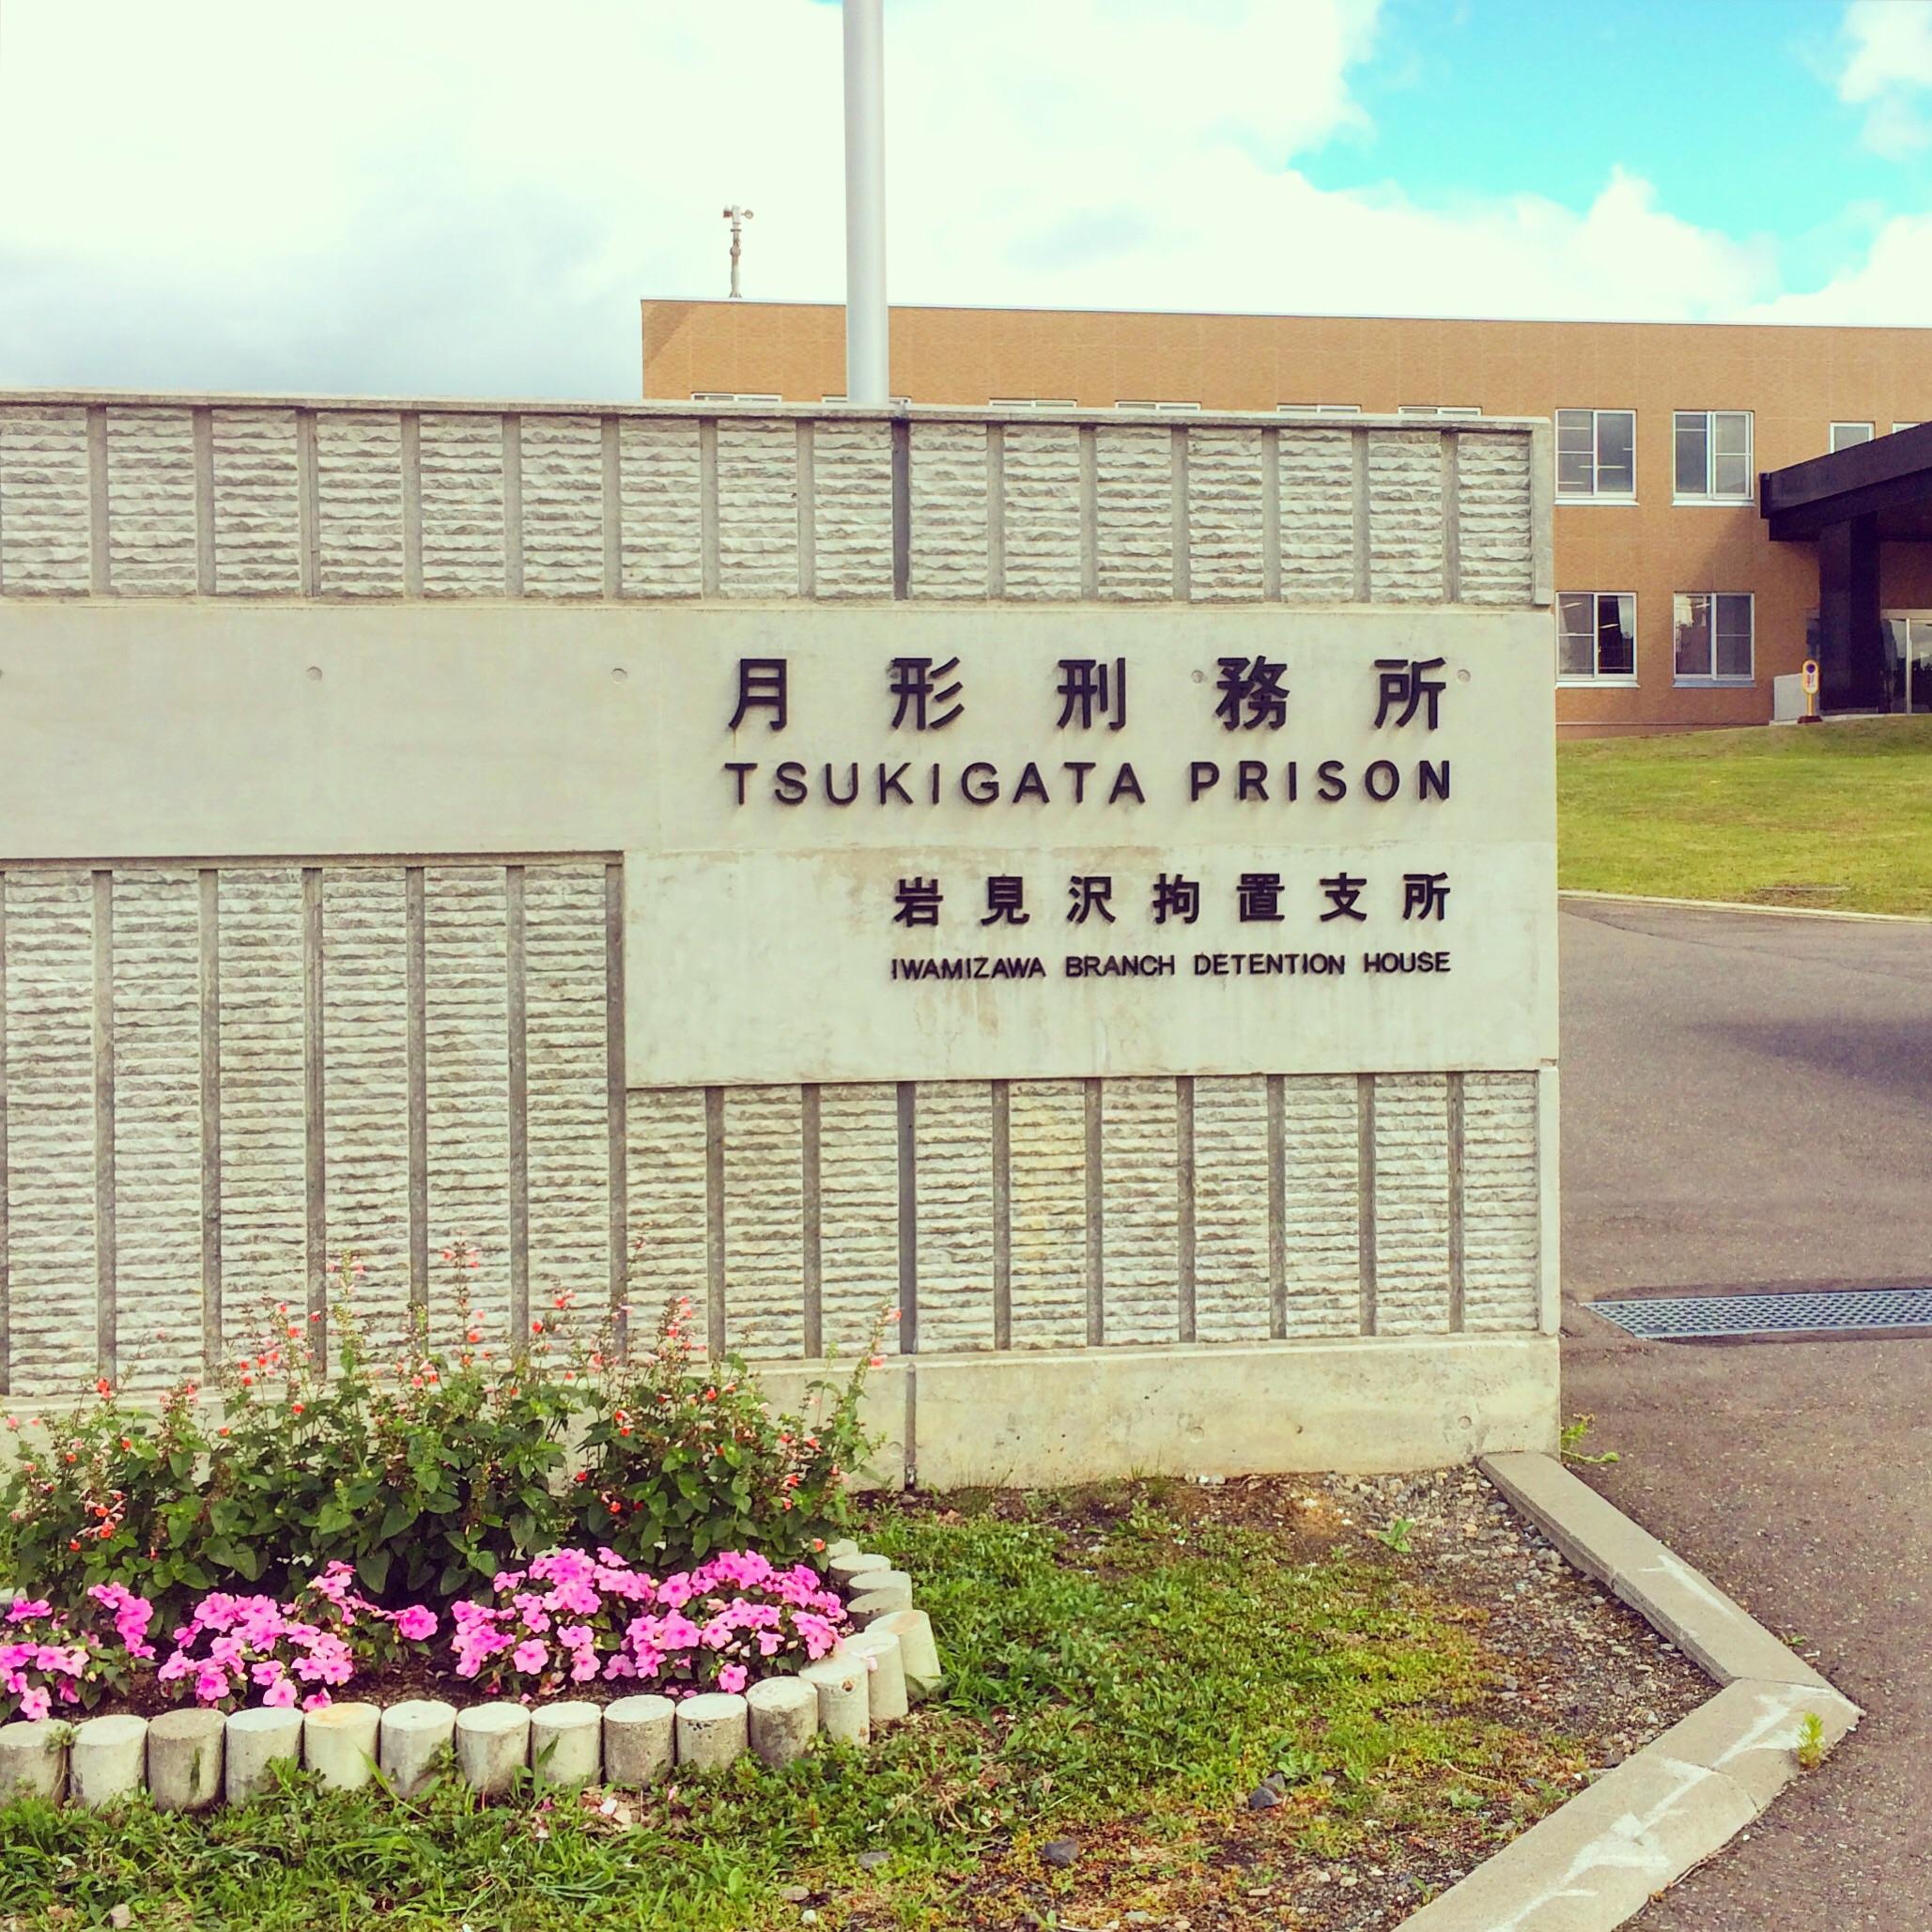 日本监狱拒让囚犯戴眼镜  律师协会抨击违反人权